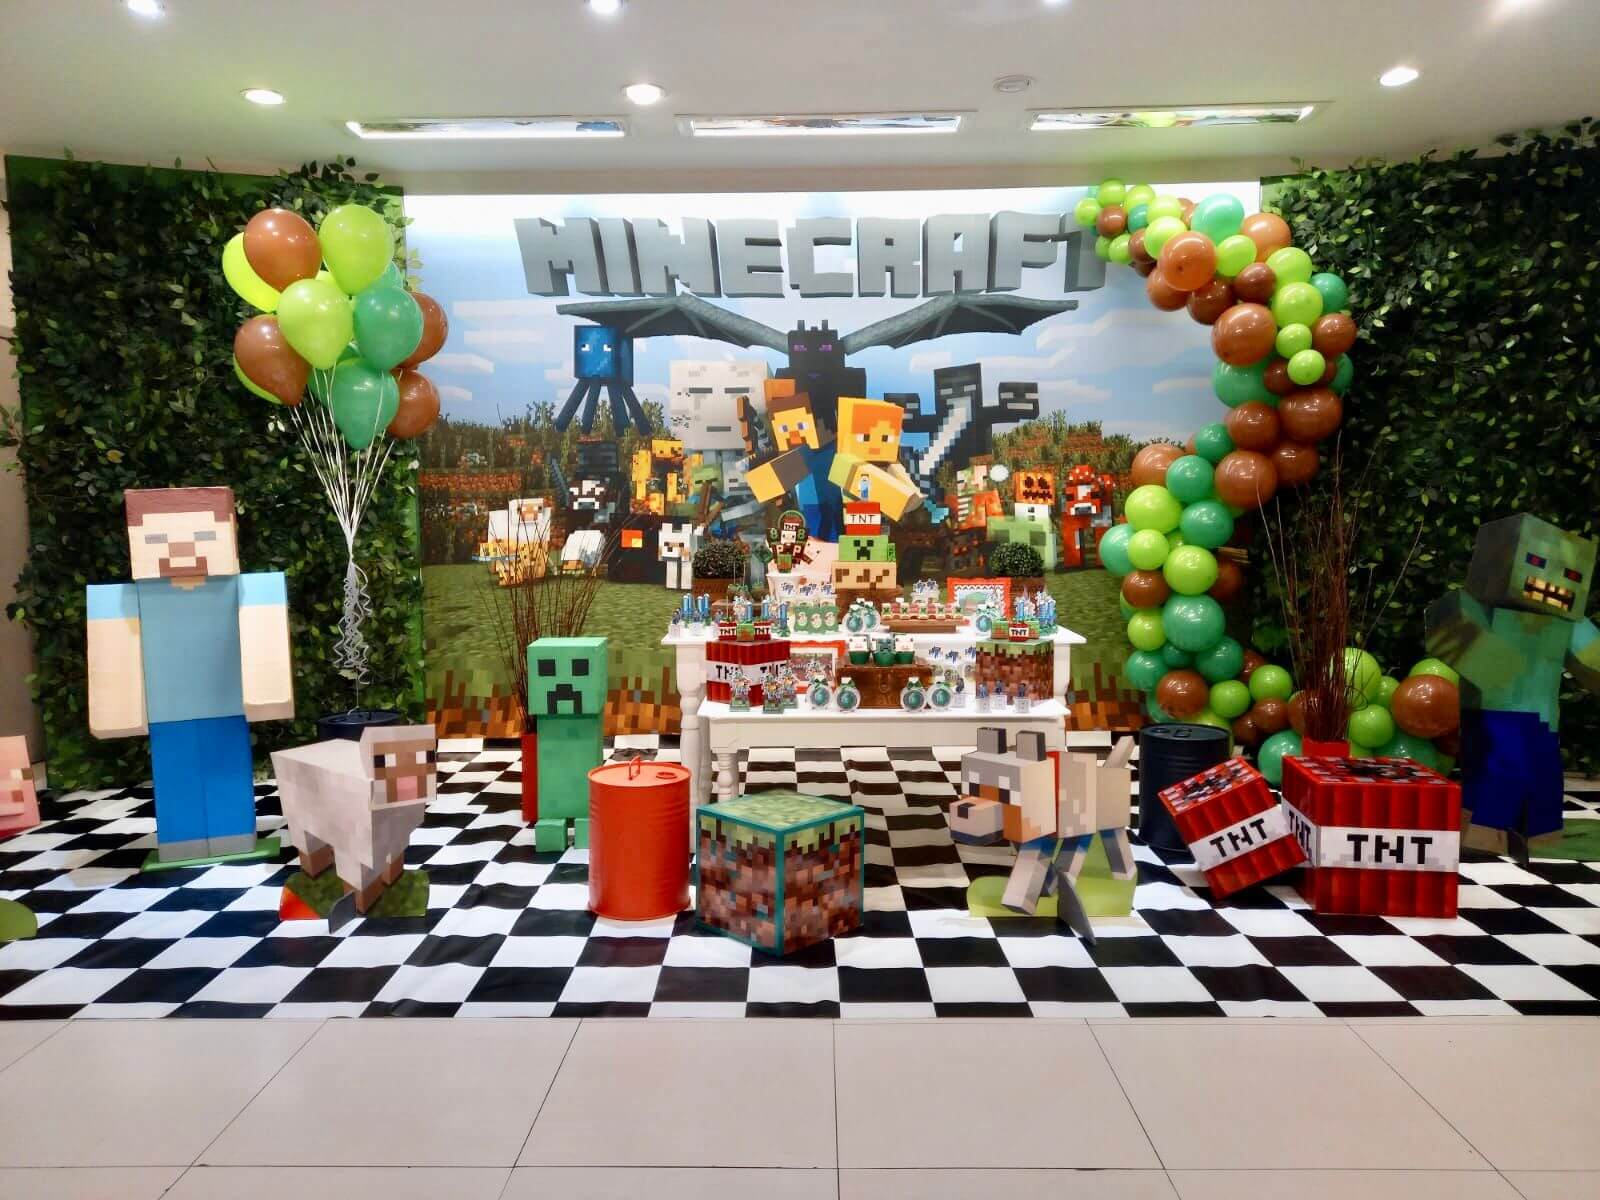 Boneco Minecraft - Studio Arte em Festa